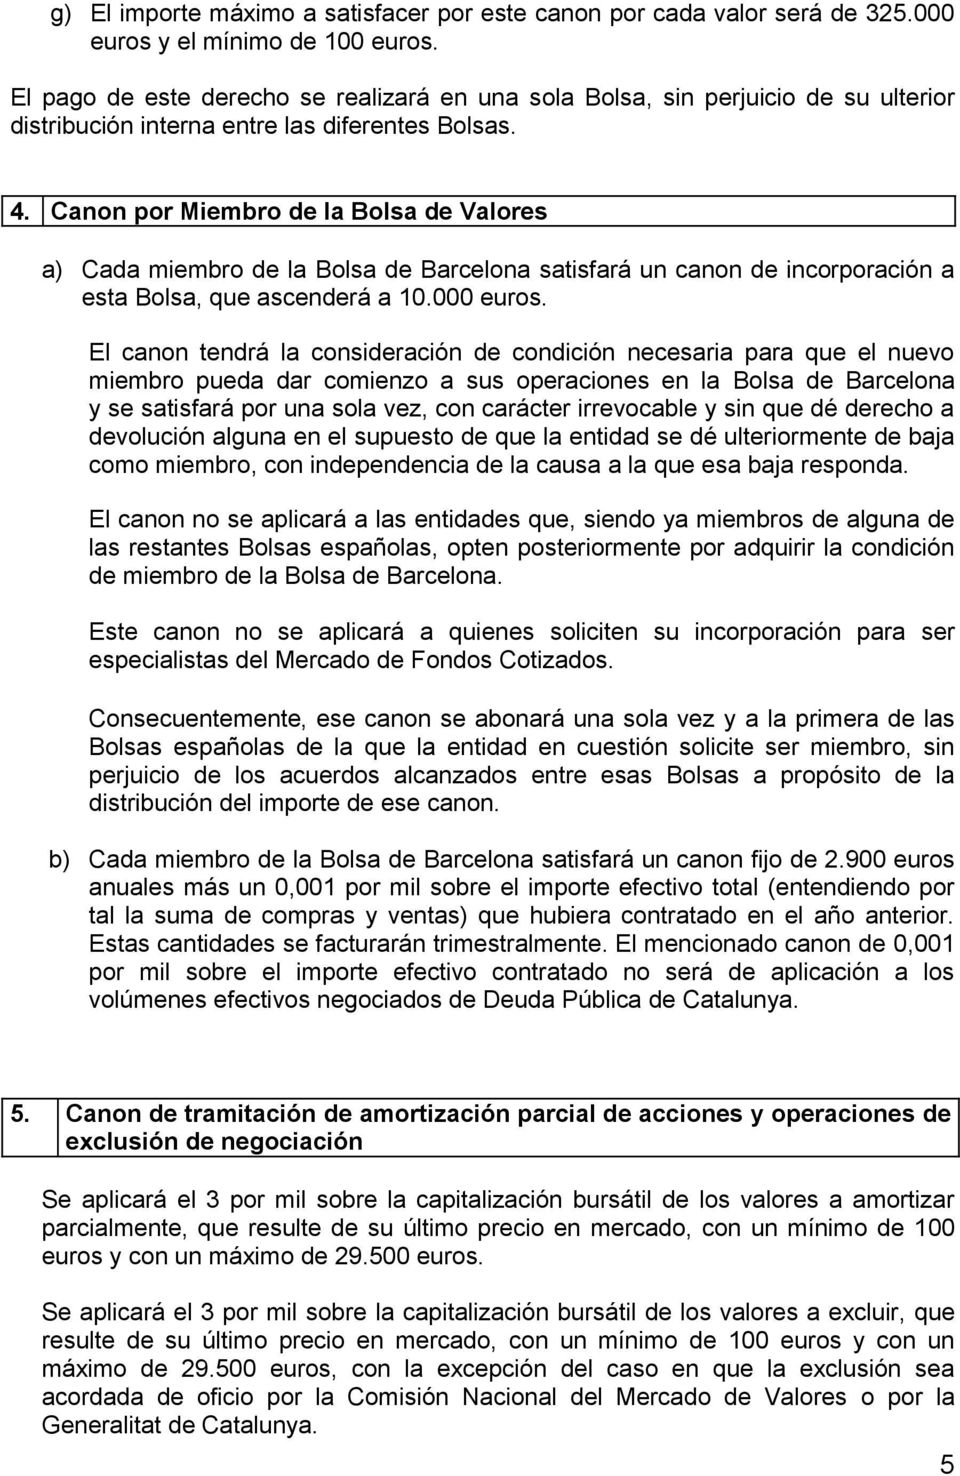 Canon por Miembro de la Bolsa de Valores a) Cada miembro de la Bolsa de Barcelona satisfará un canon de incorporación a esta Bolsa, que ascenderá a 10.000 euros.